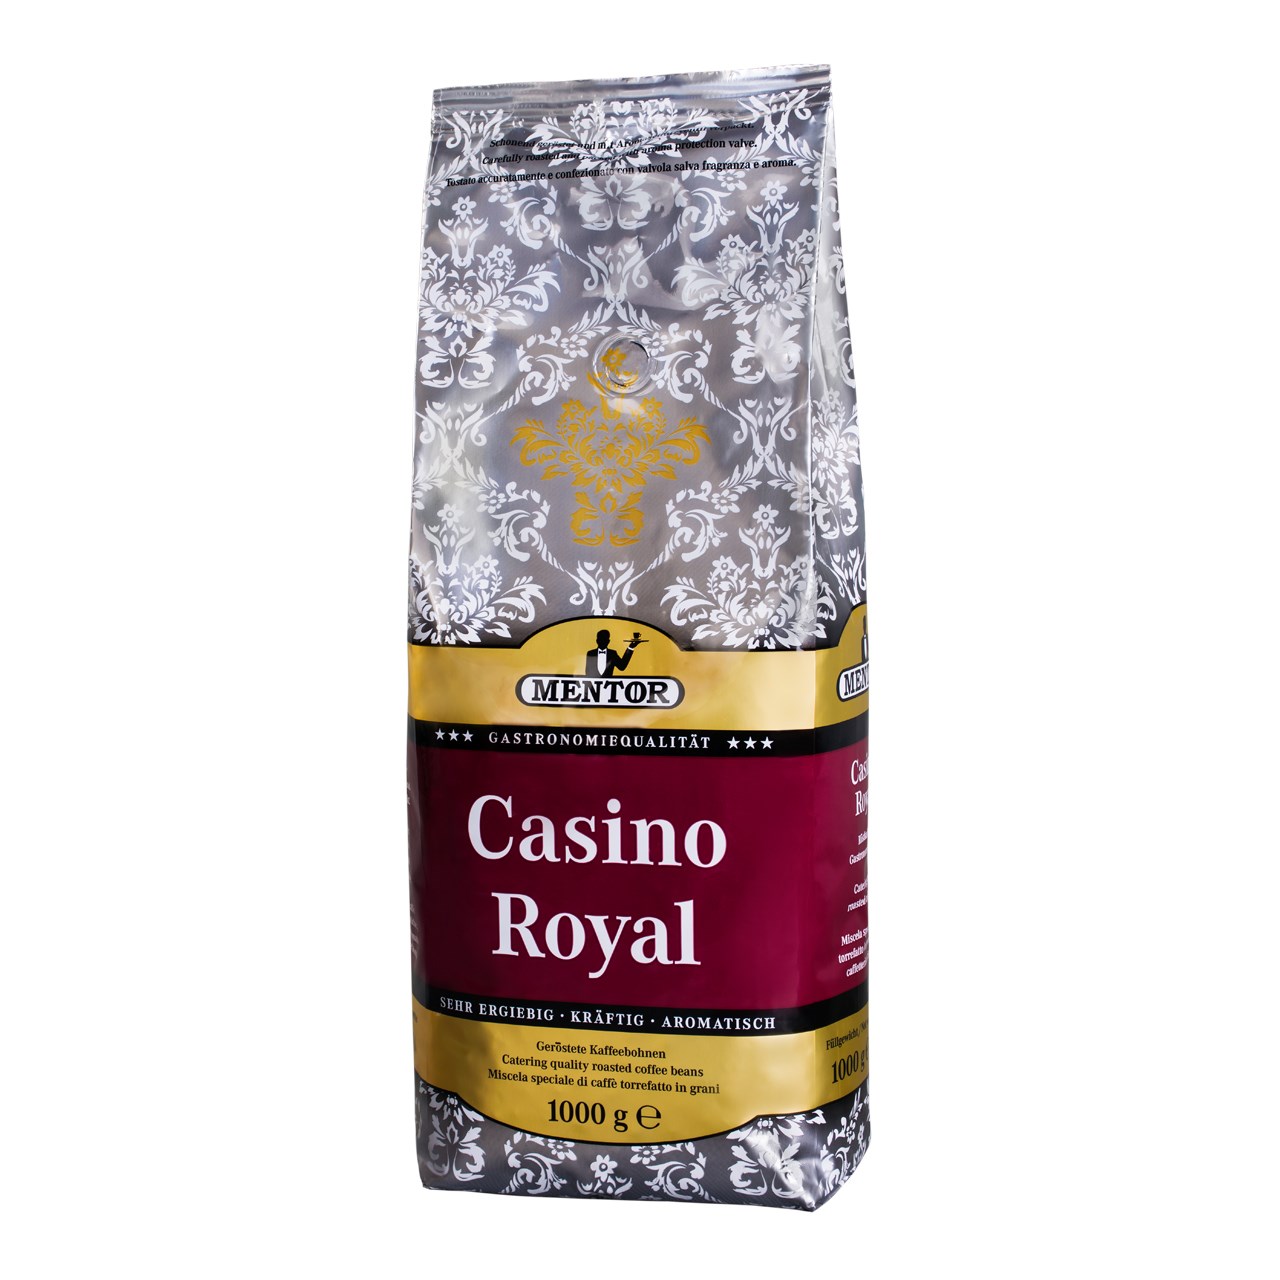 بسته دانه قهوه منتور مدل Casino Royal مقدار  1000 گرم